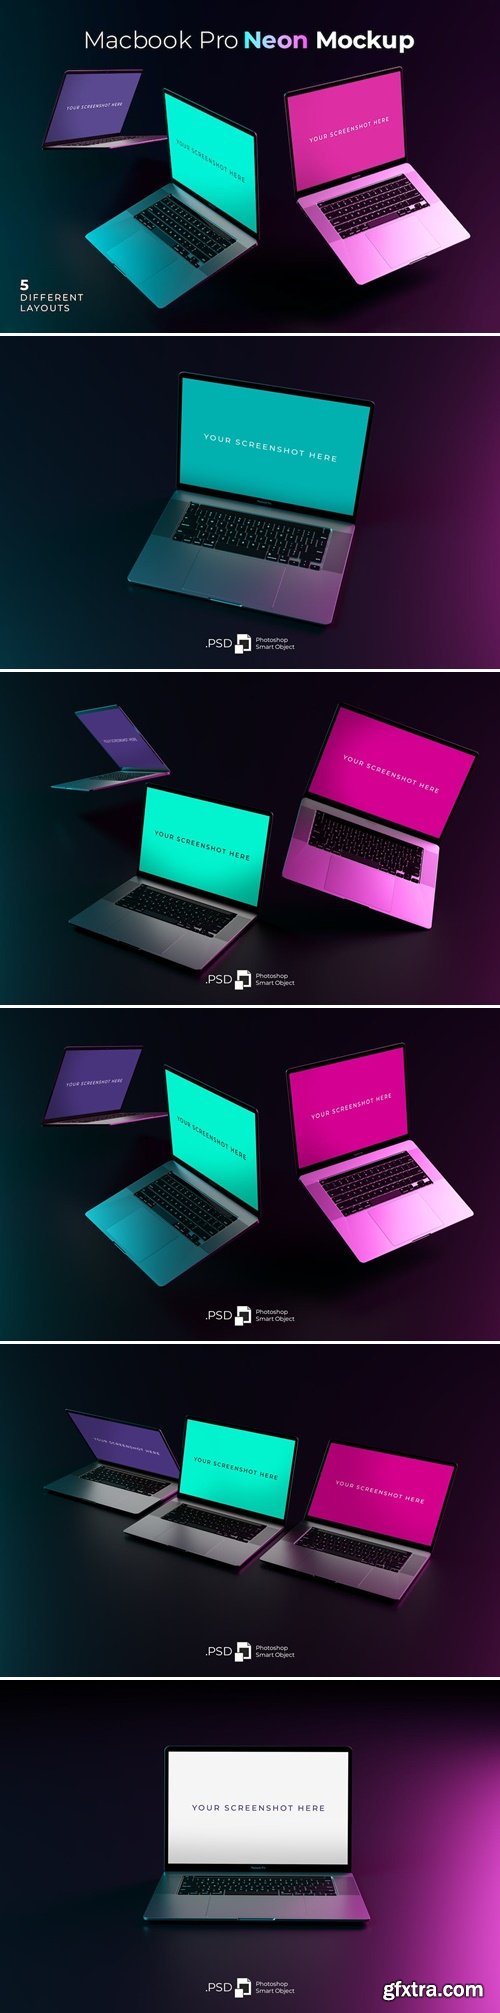 Macbook Pro Neon Mockup UB6VUW4